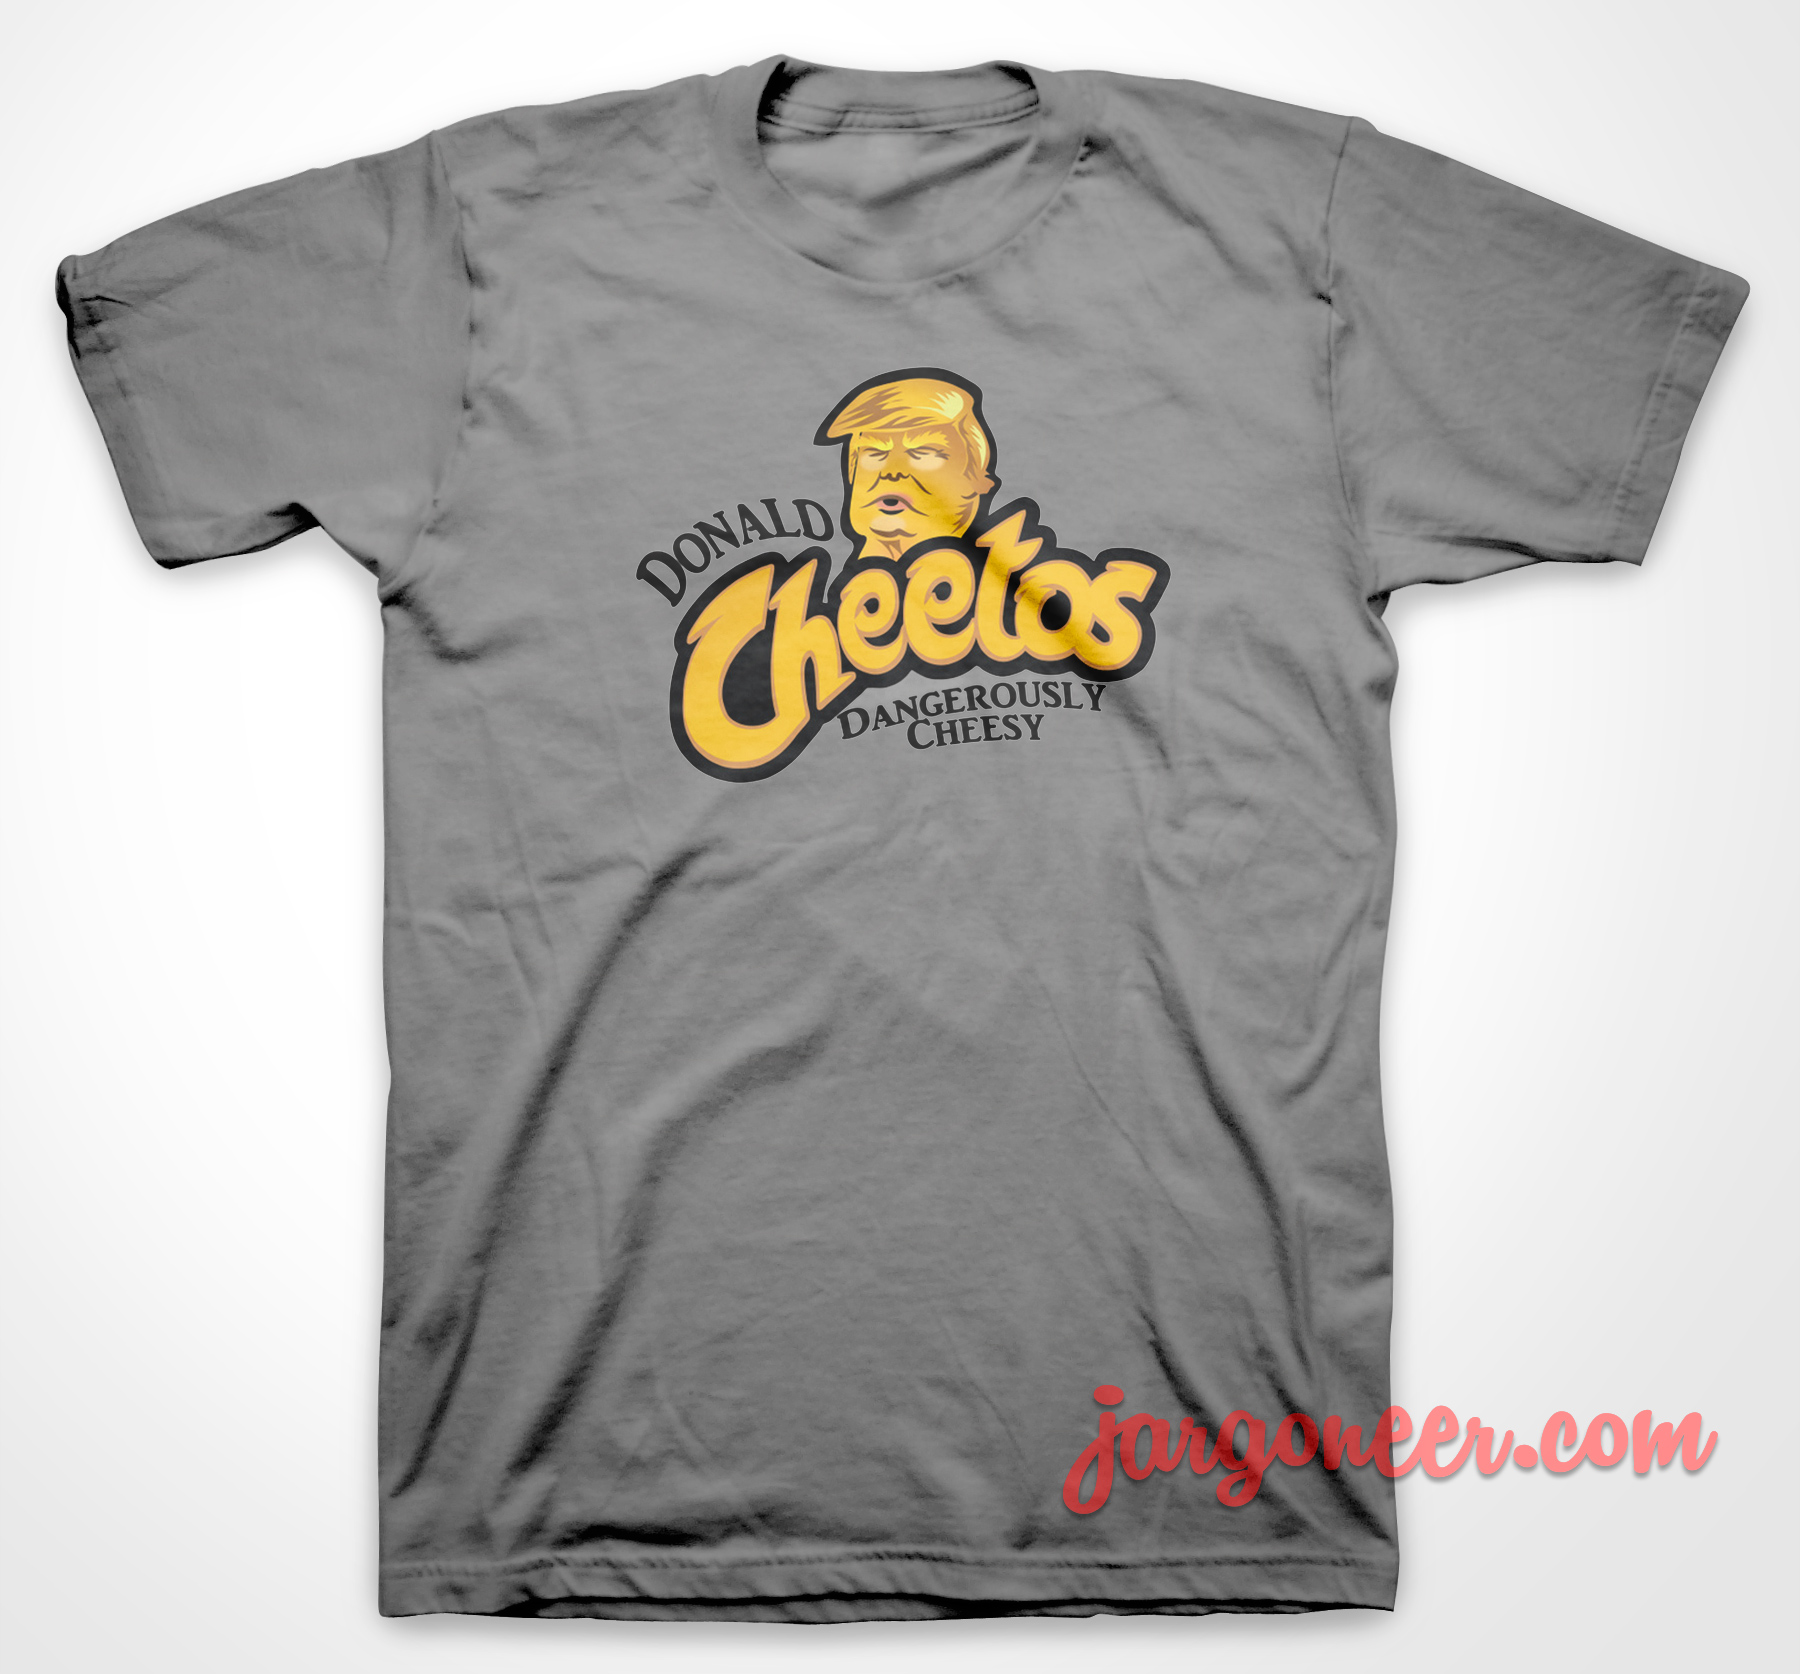 Donald Cheetos - Shop Unique Graphic Cool Shirt Designs